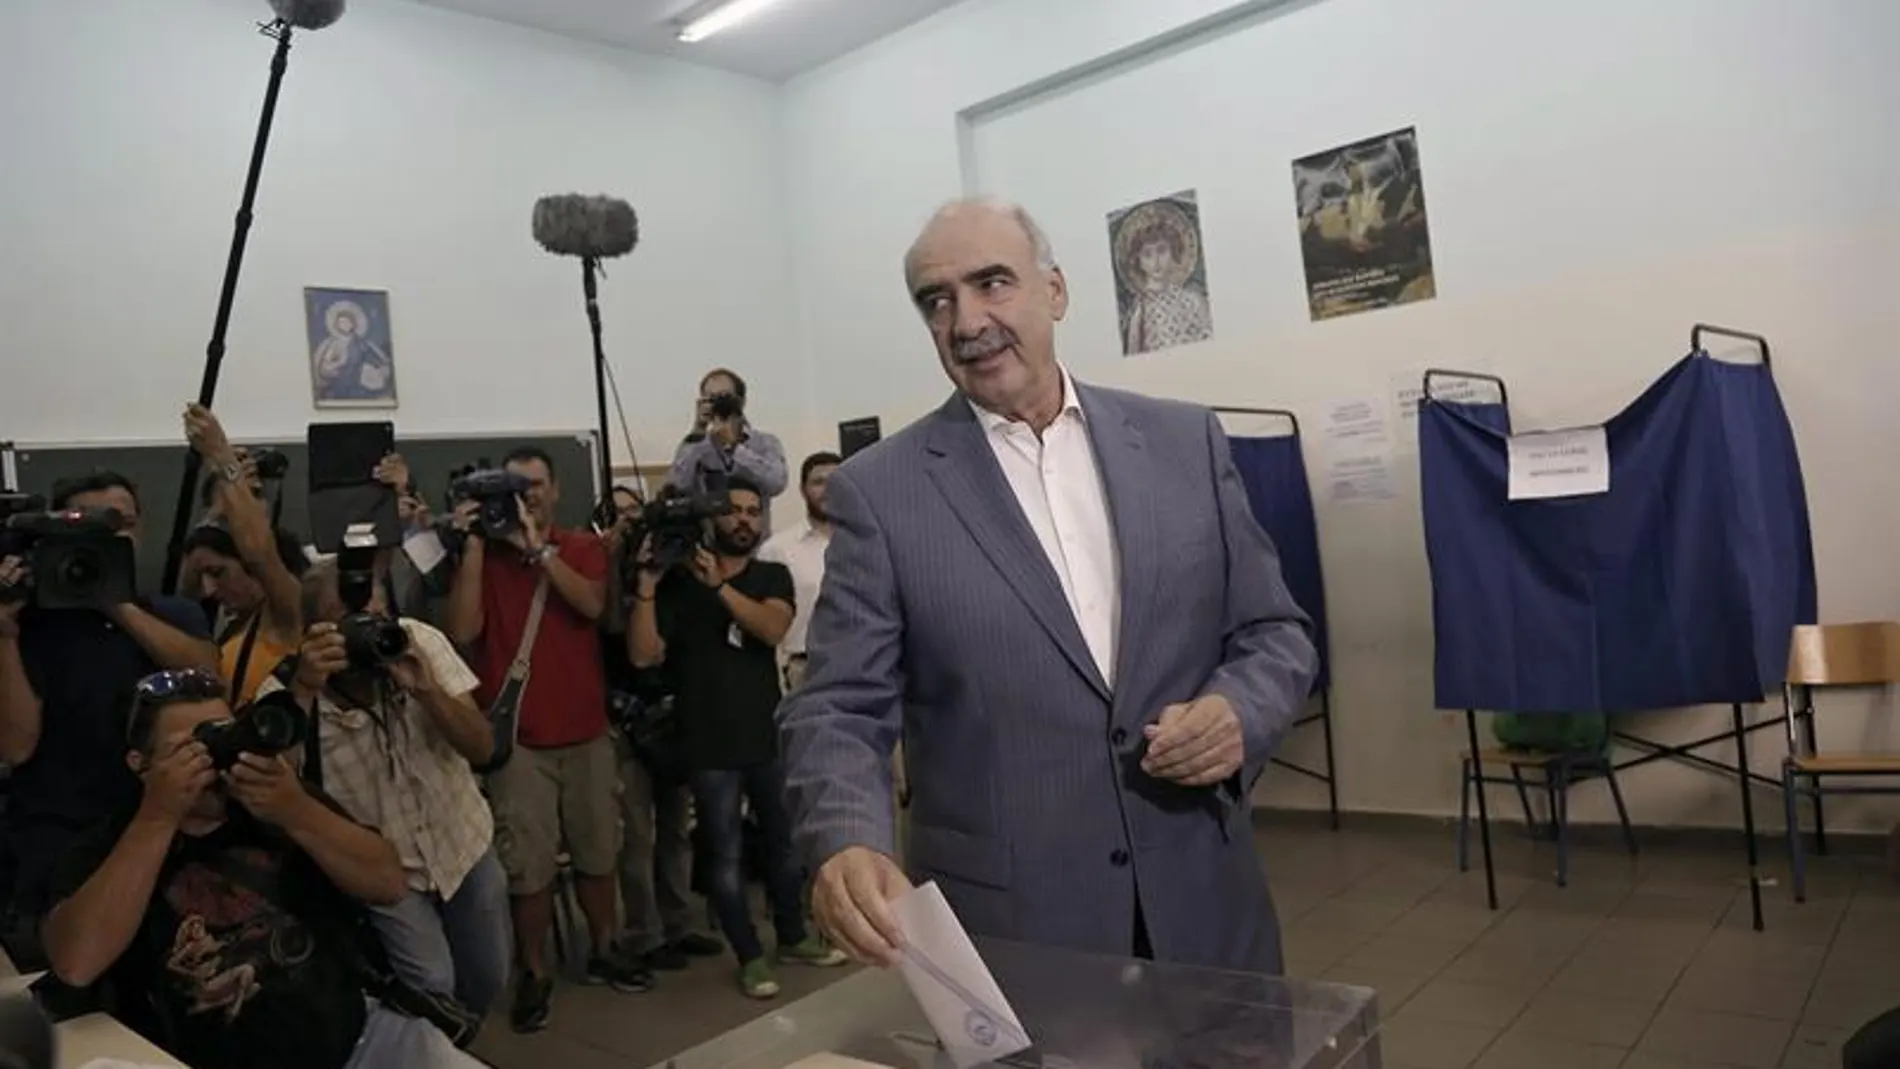 El líder de Nueva Democracia, Vangelis Meimarakis, emite su voto